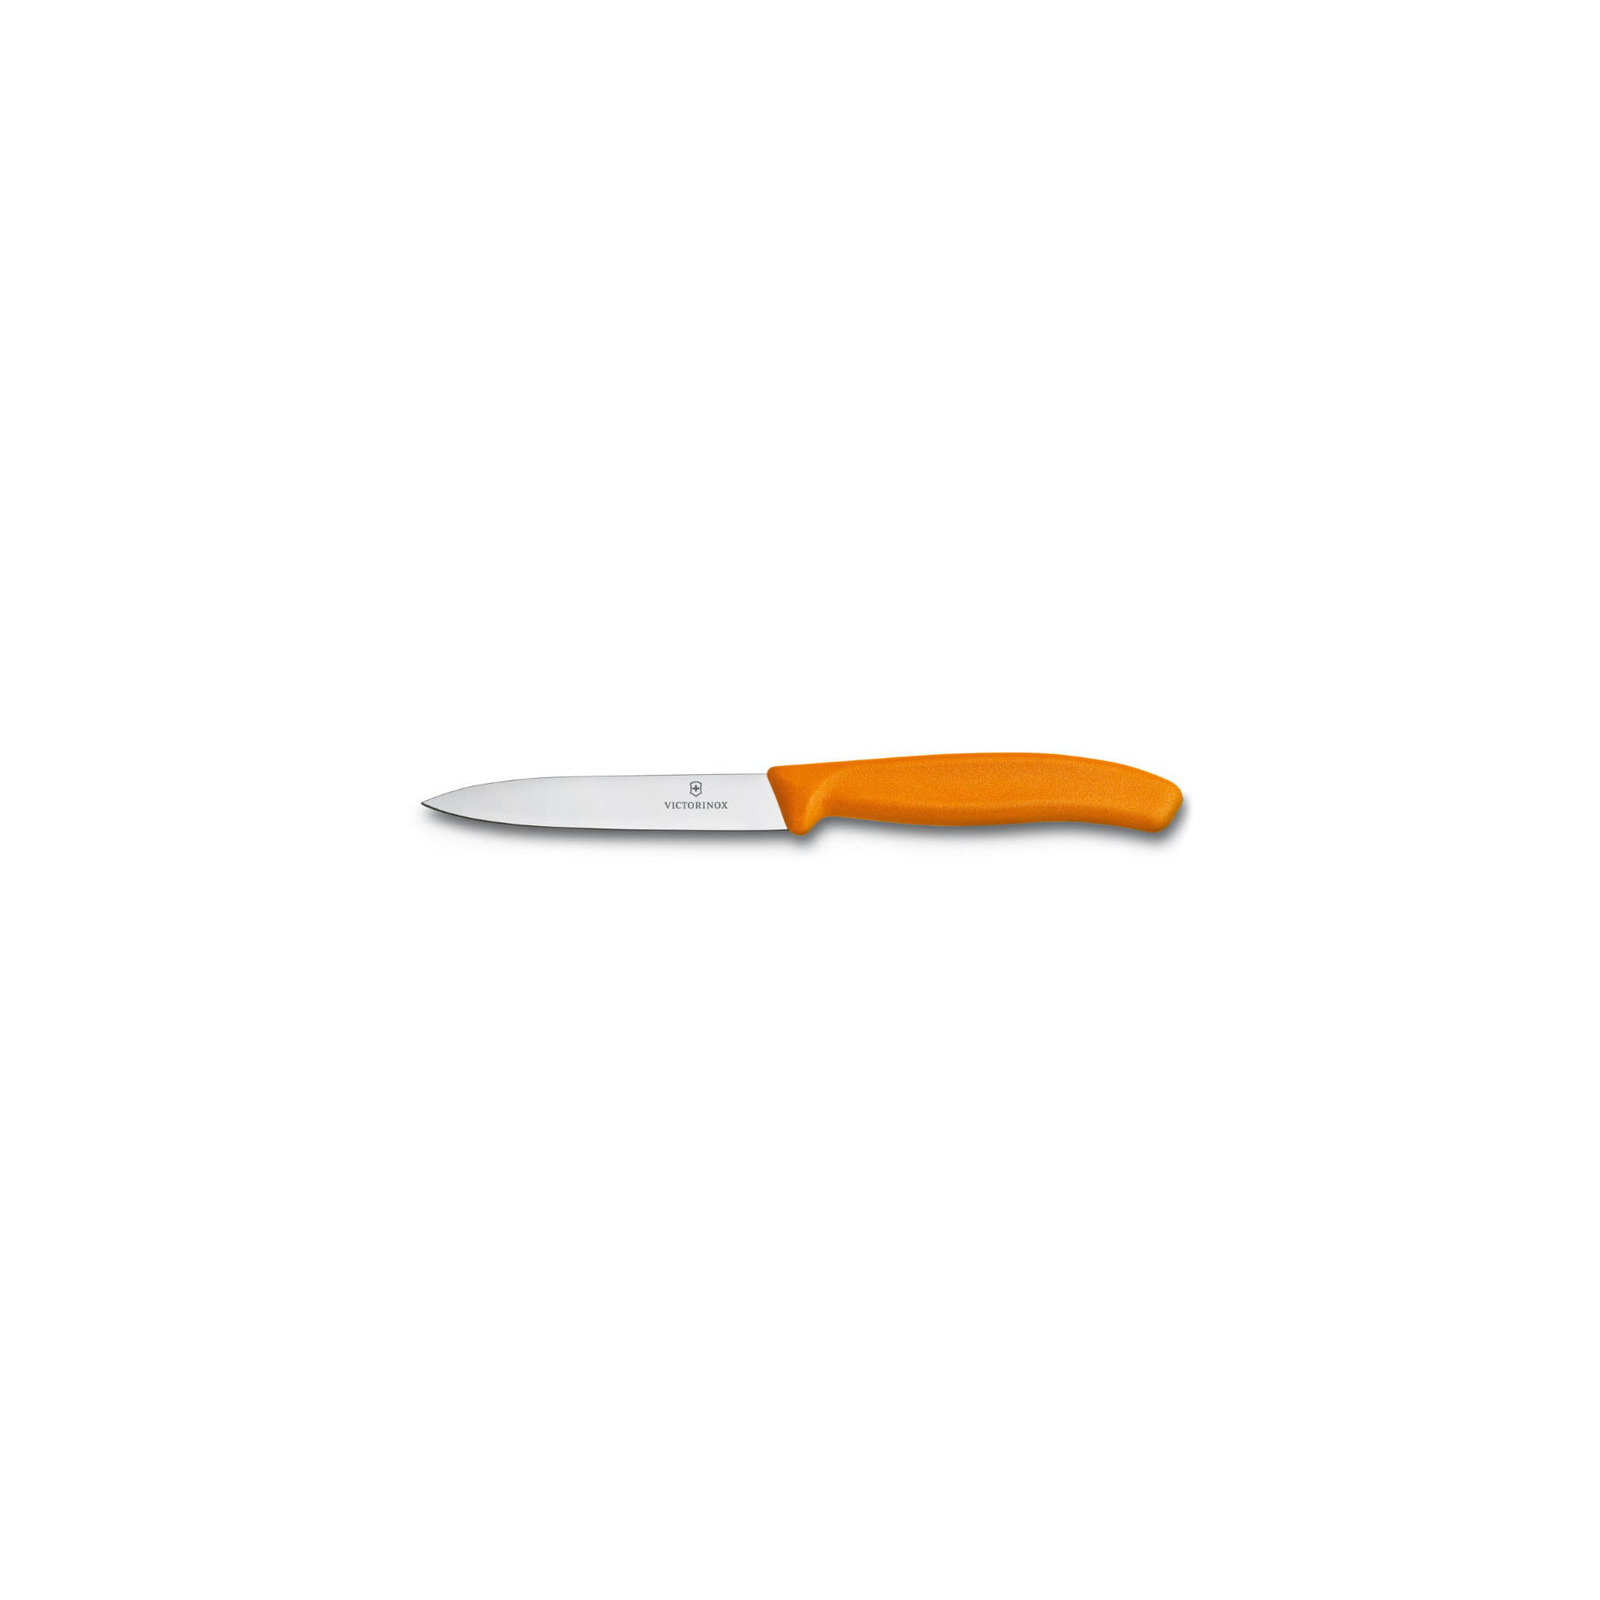 Кухонный нож Victorinox SwissClassic для стейка 11 см, черный (6.7233.20)